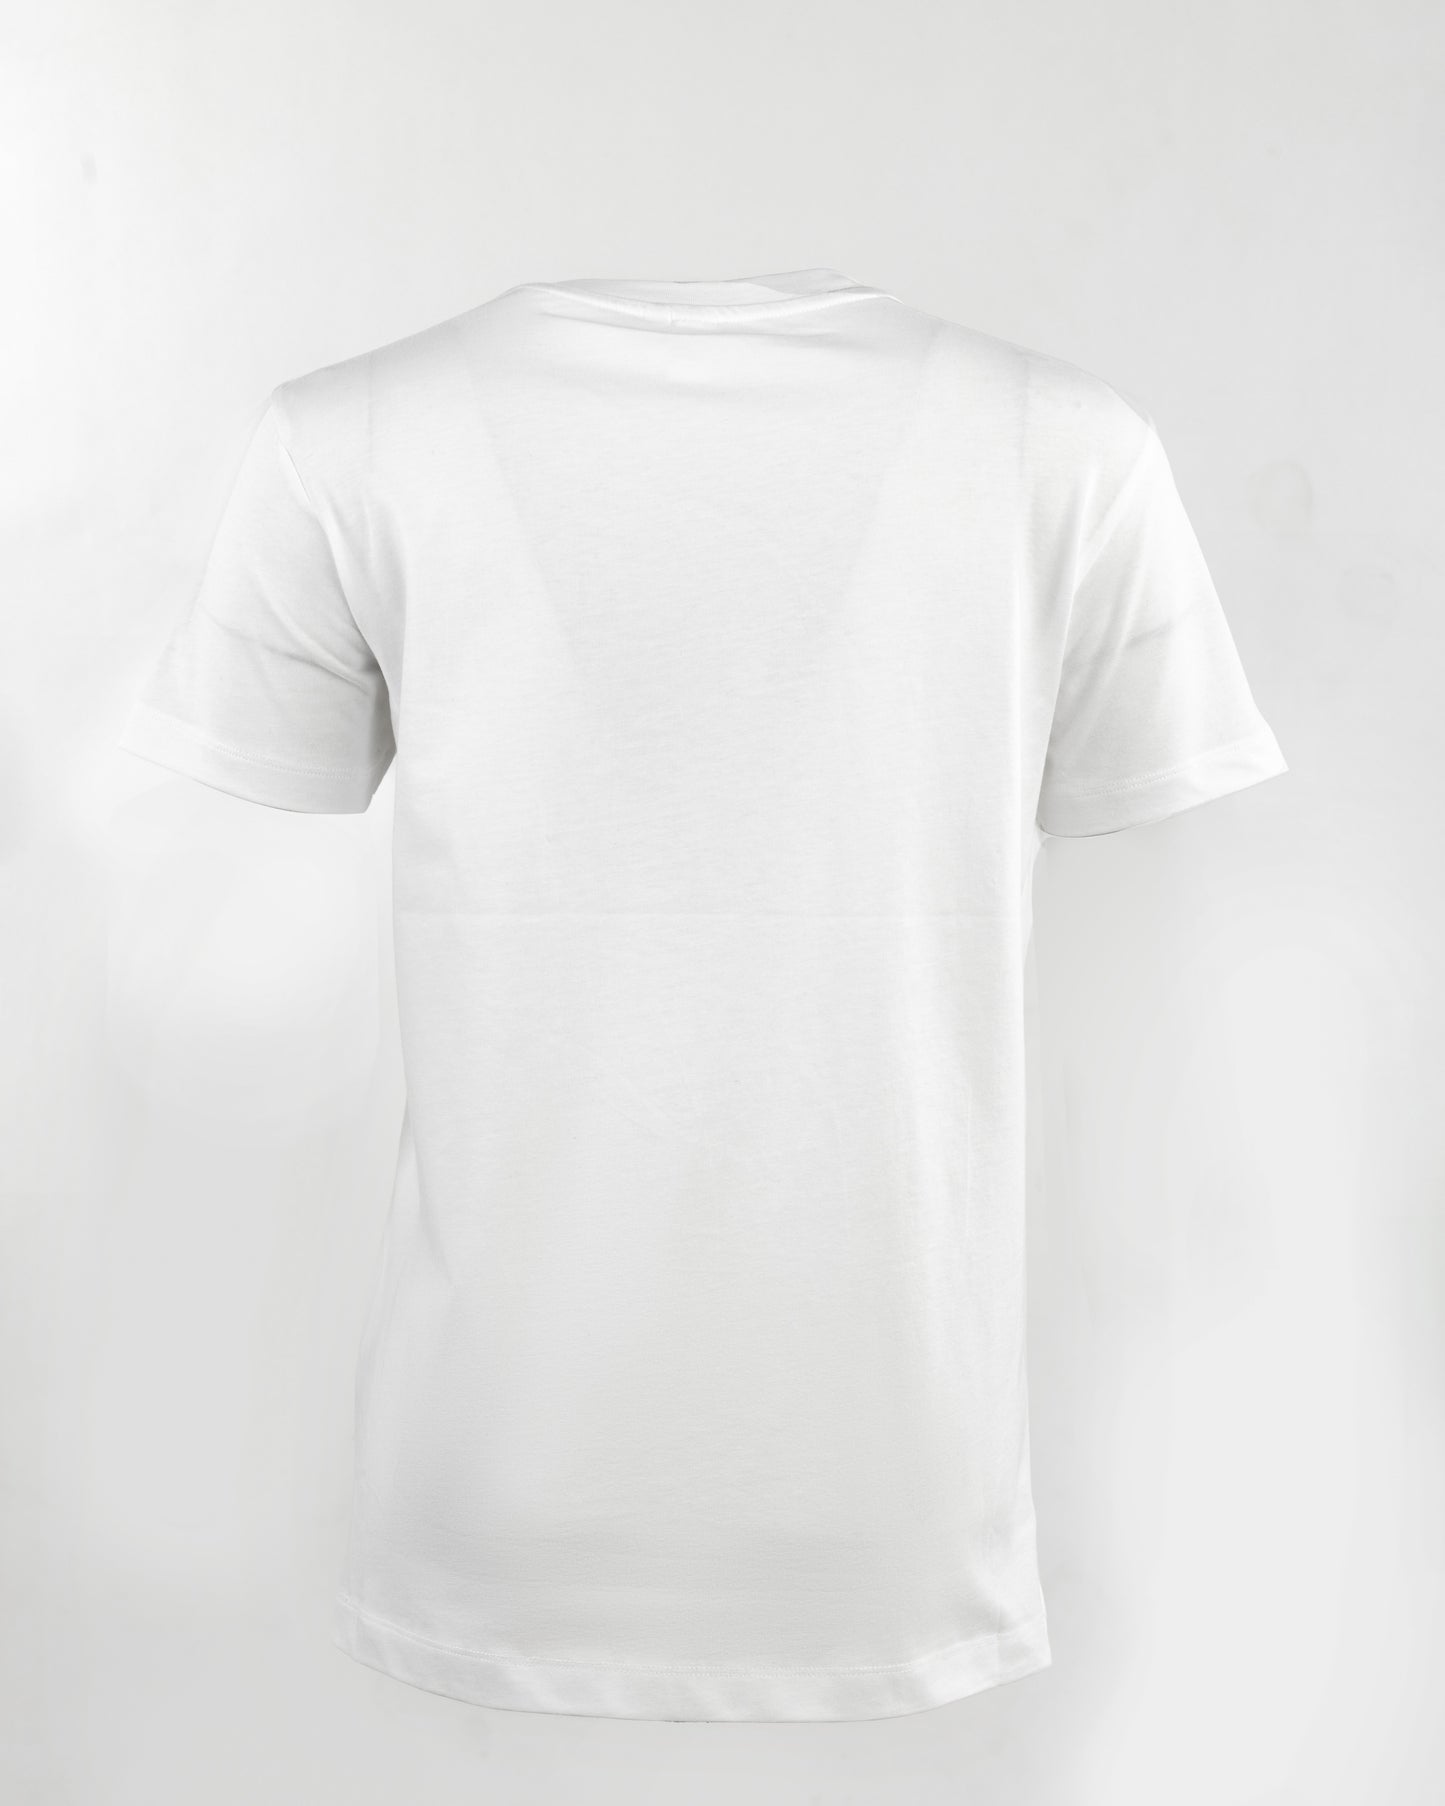 Lavos Women's Short Sleeve T-shirt - 100% BCI Cotton